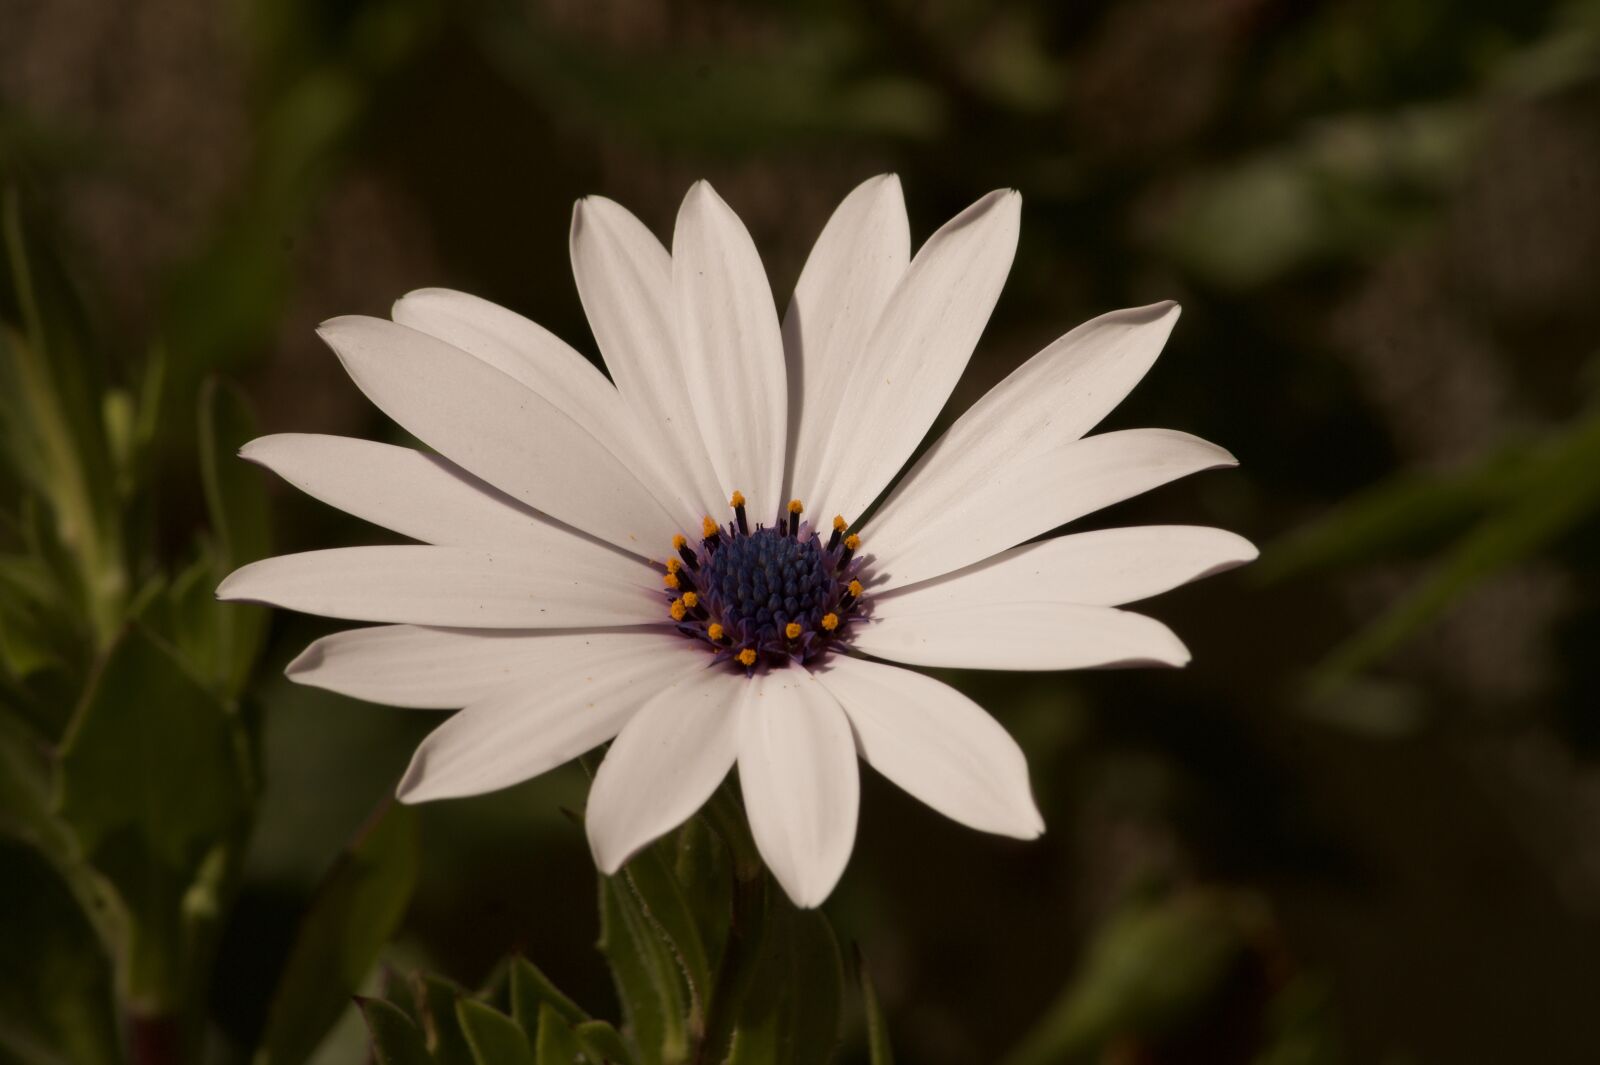 Sony SLT-A58 + Sony DT 55-200mm F4-5.6 SAM sample photo. White flower, flower, flower photography